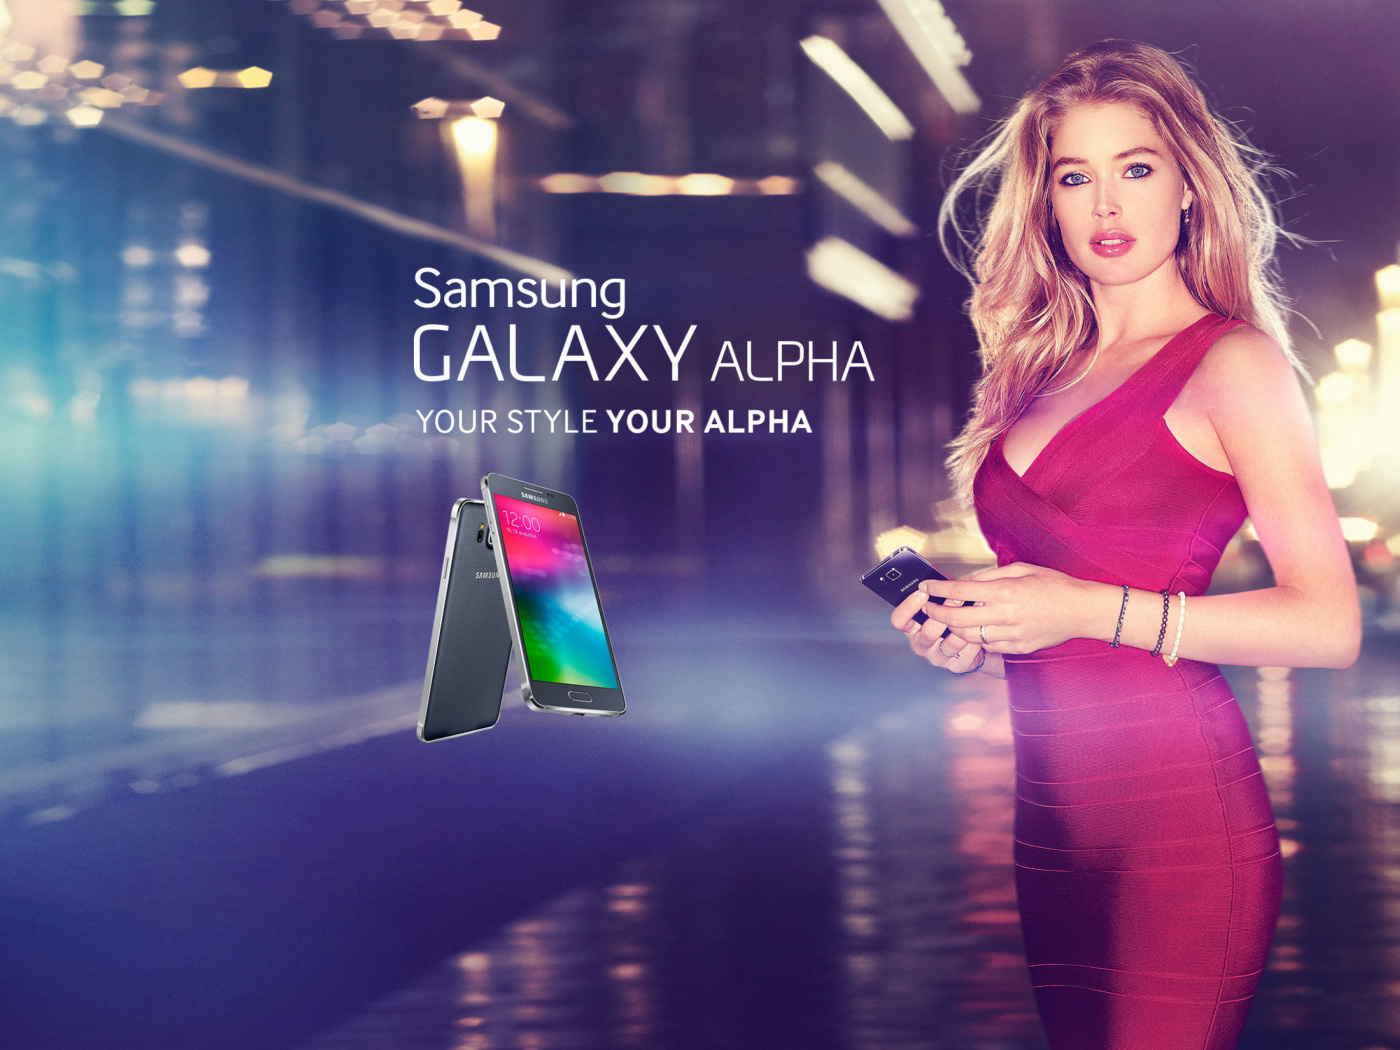 Samsung Galaxy Alpha Advertisement with Doutzen Kroes wallpaper 1400x1050